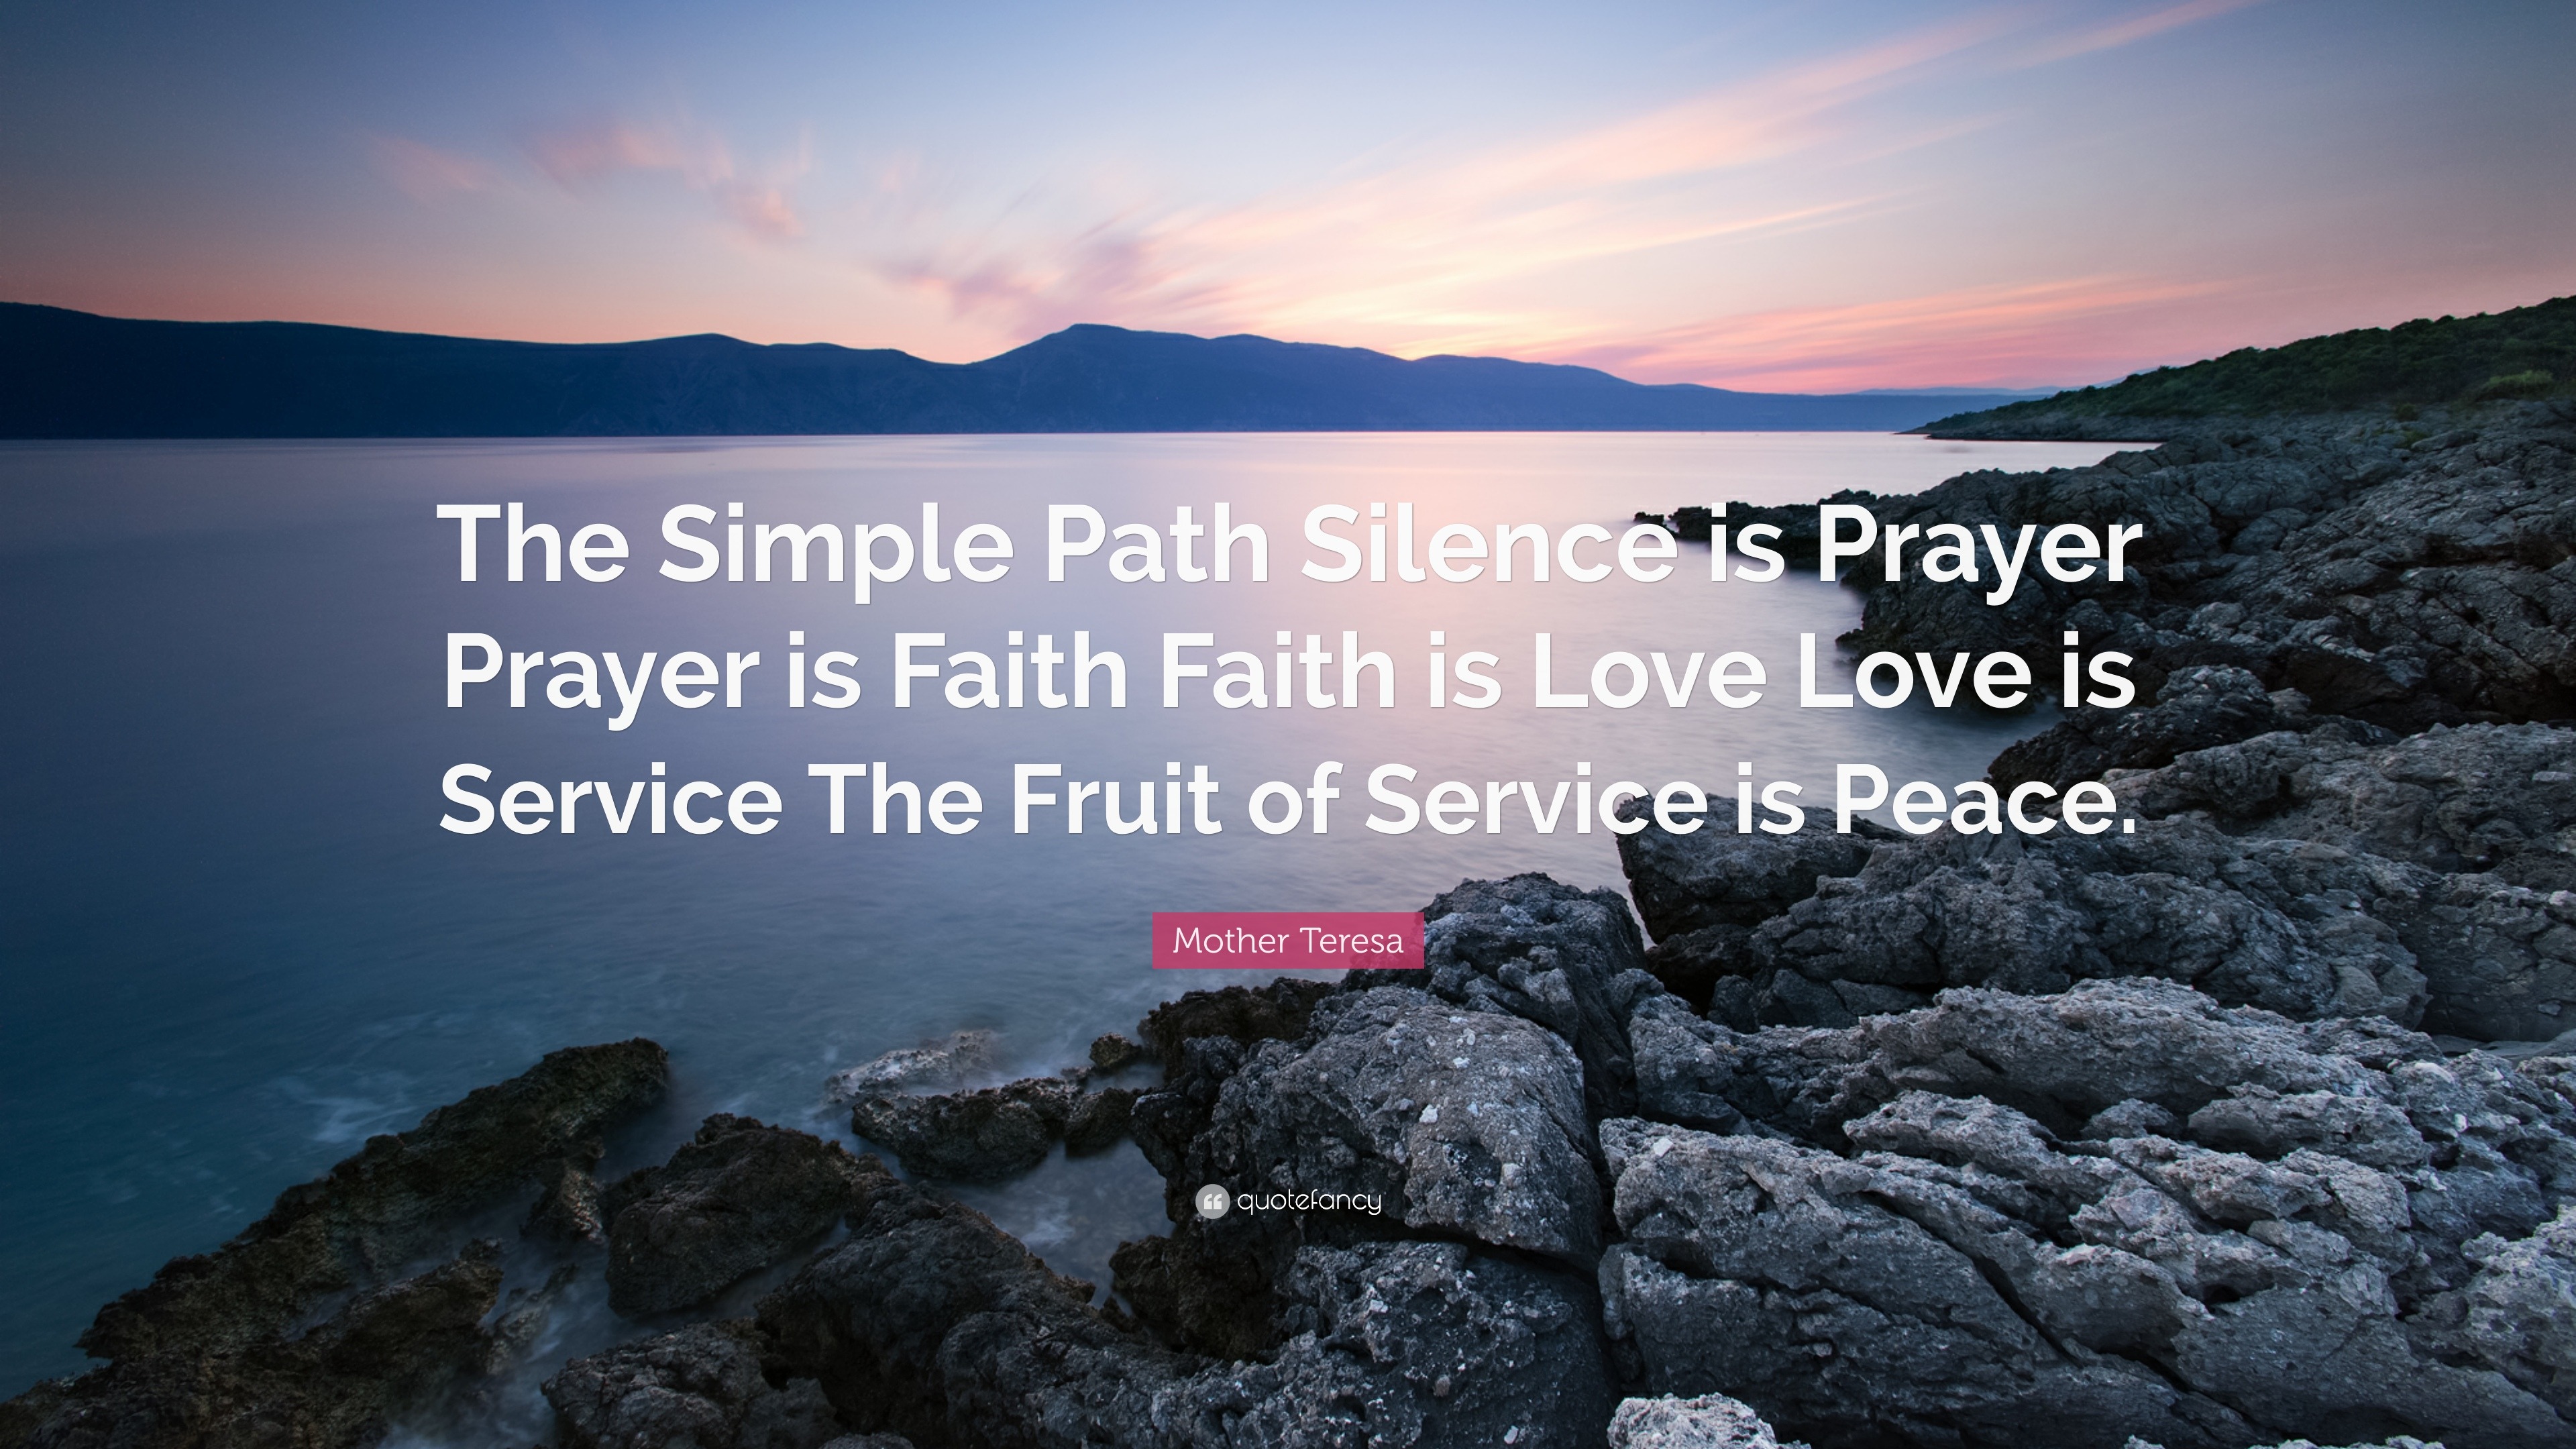 Mother Teresa Quote “The Simple Path Silence is Prayer Prayer is Faith Faith is